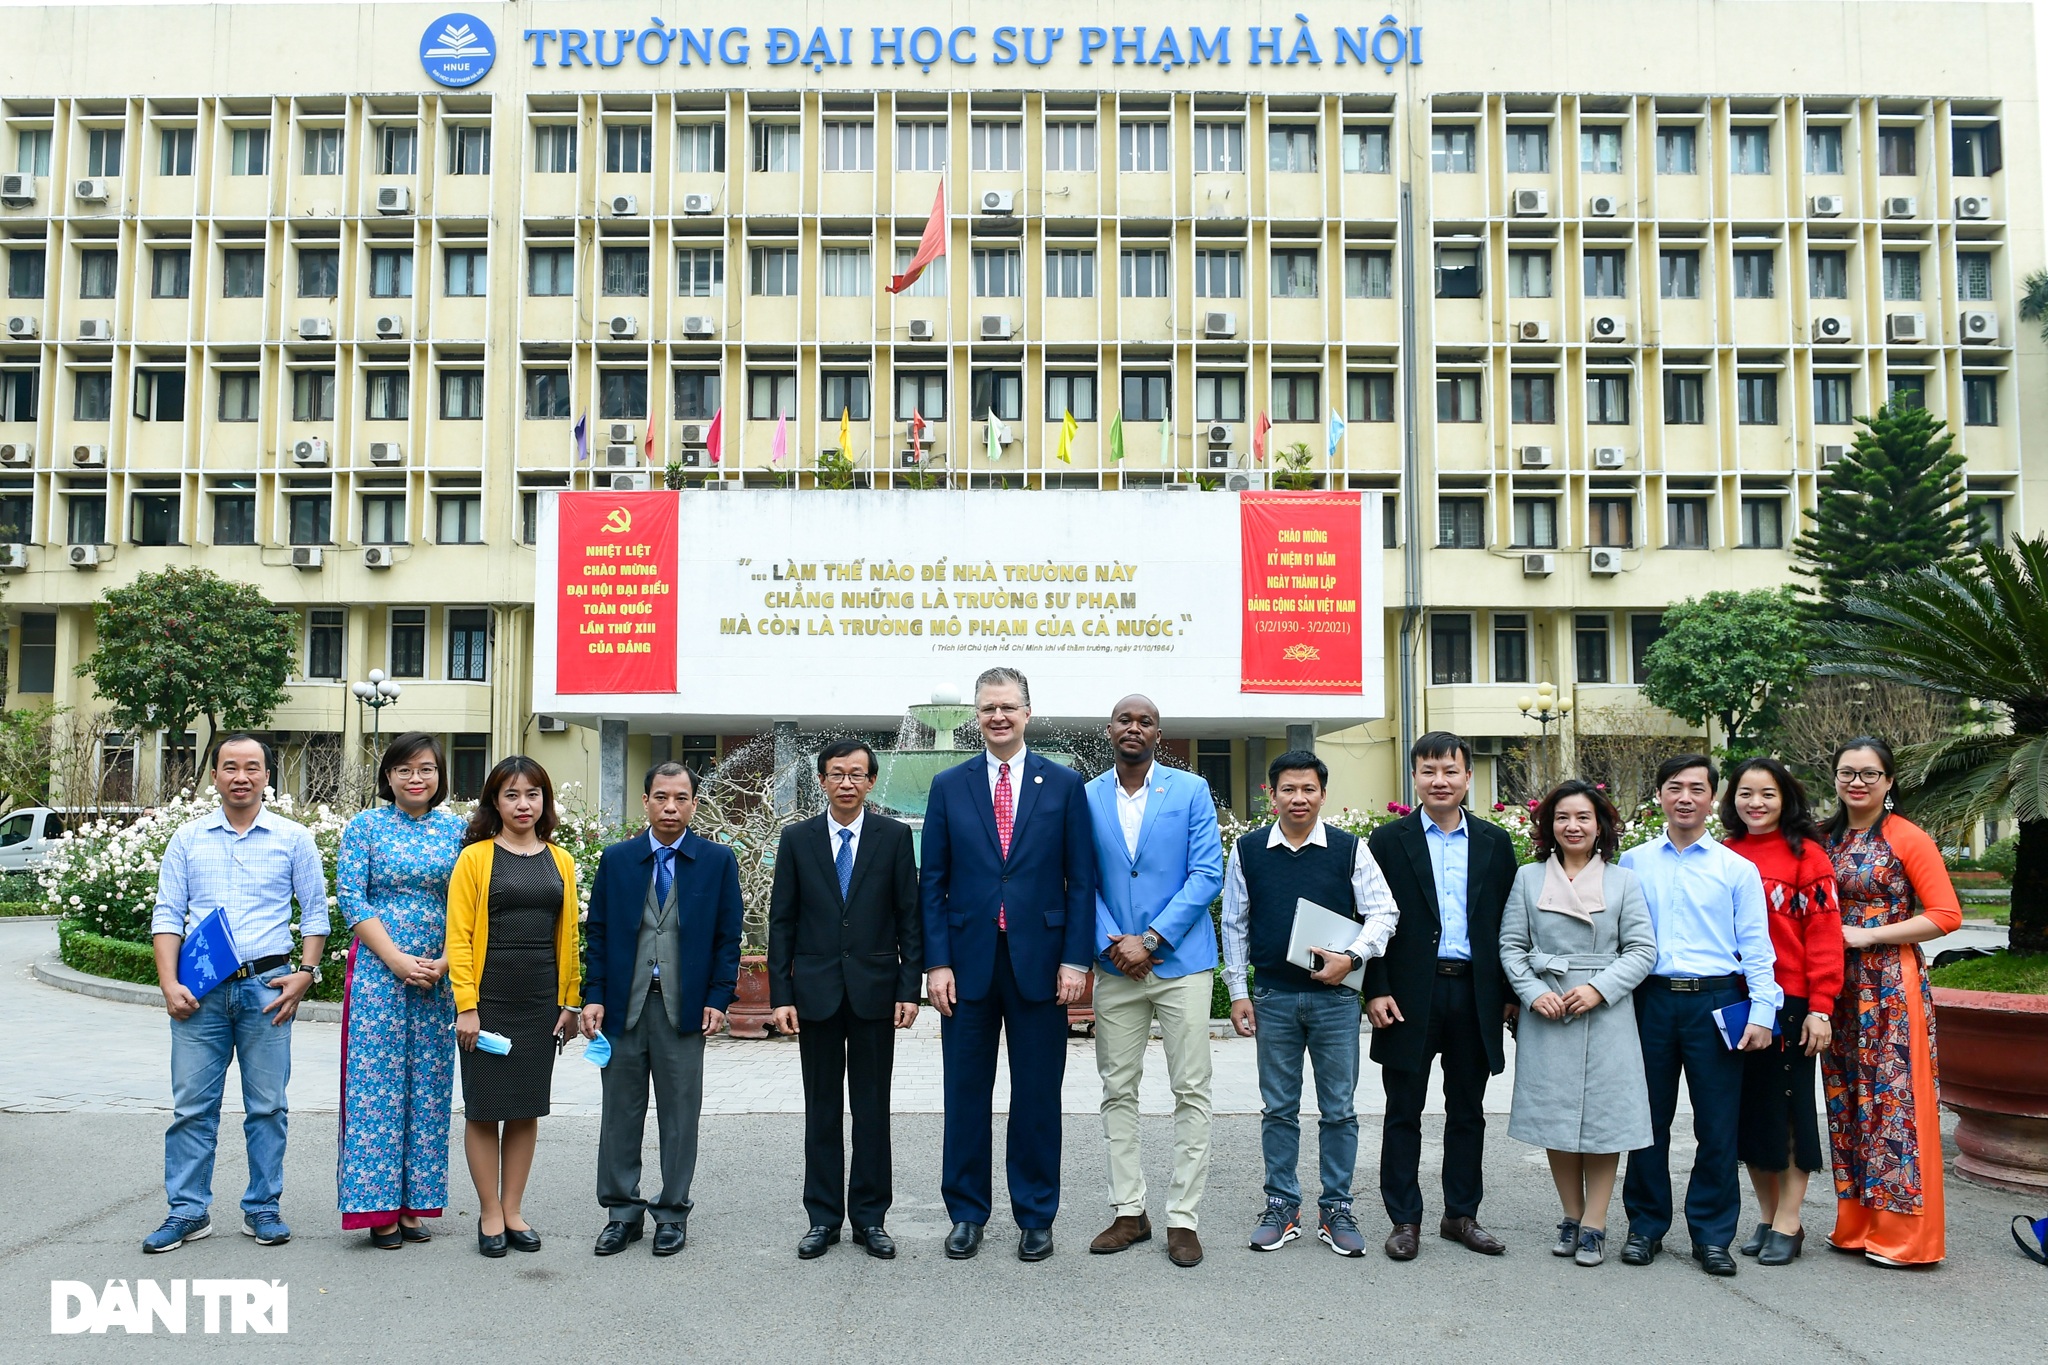 Đại sứ Hoa Kỳ tại Việt Nam tặng cây đào tự tay ghép cho trường ĐHSP Hà Nội - 12